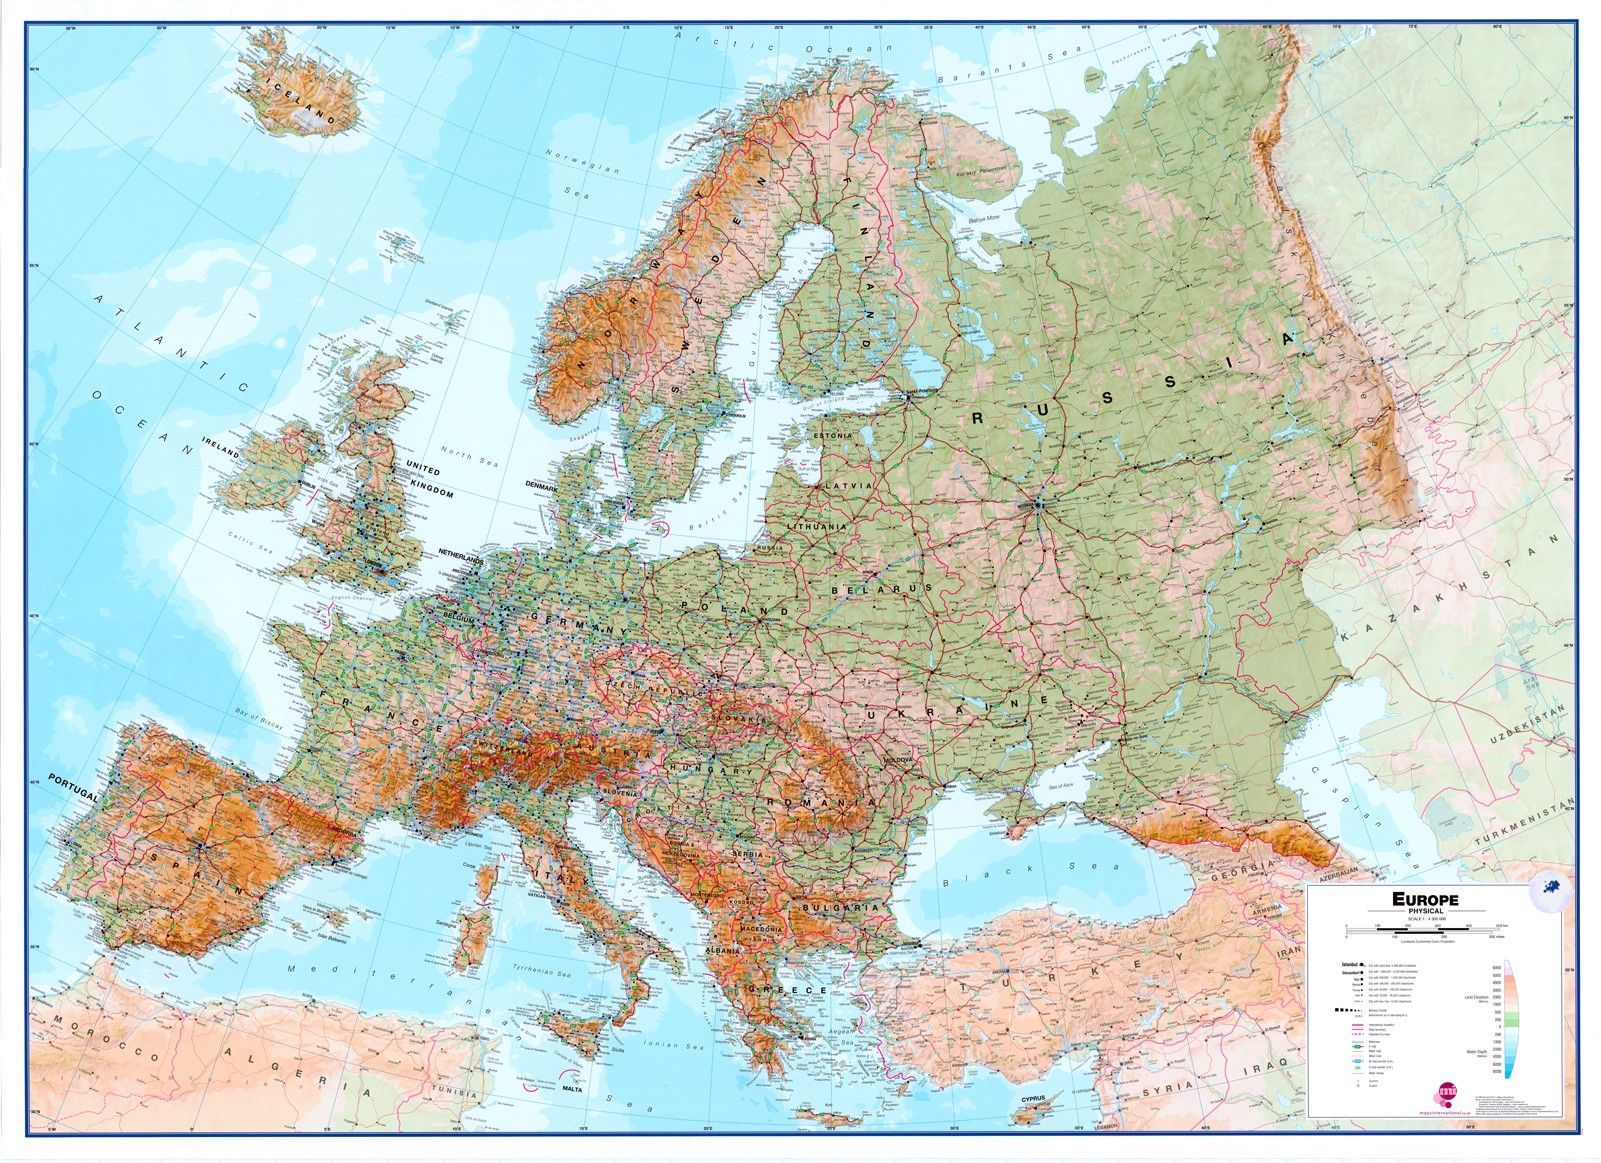 Koop Europakaart A Natuurkundig Maps International online bij COMMEE